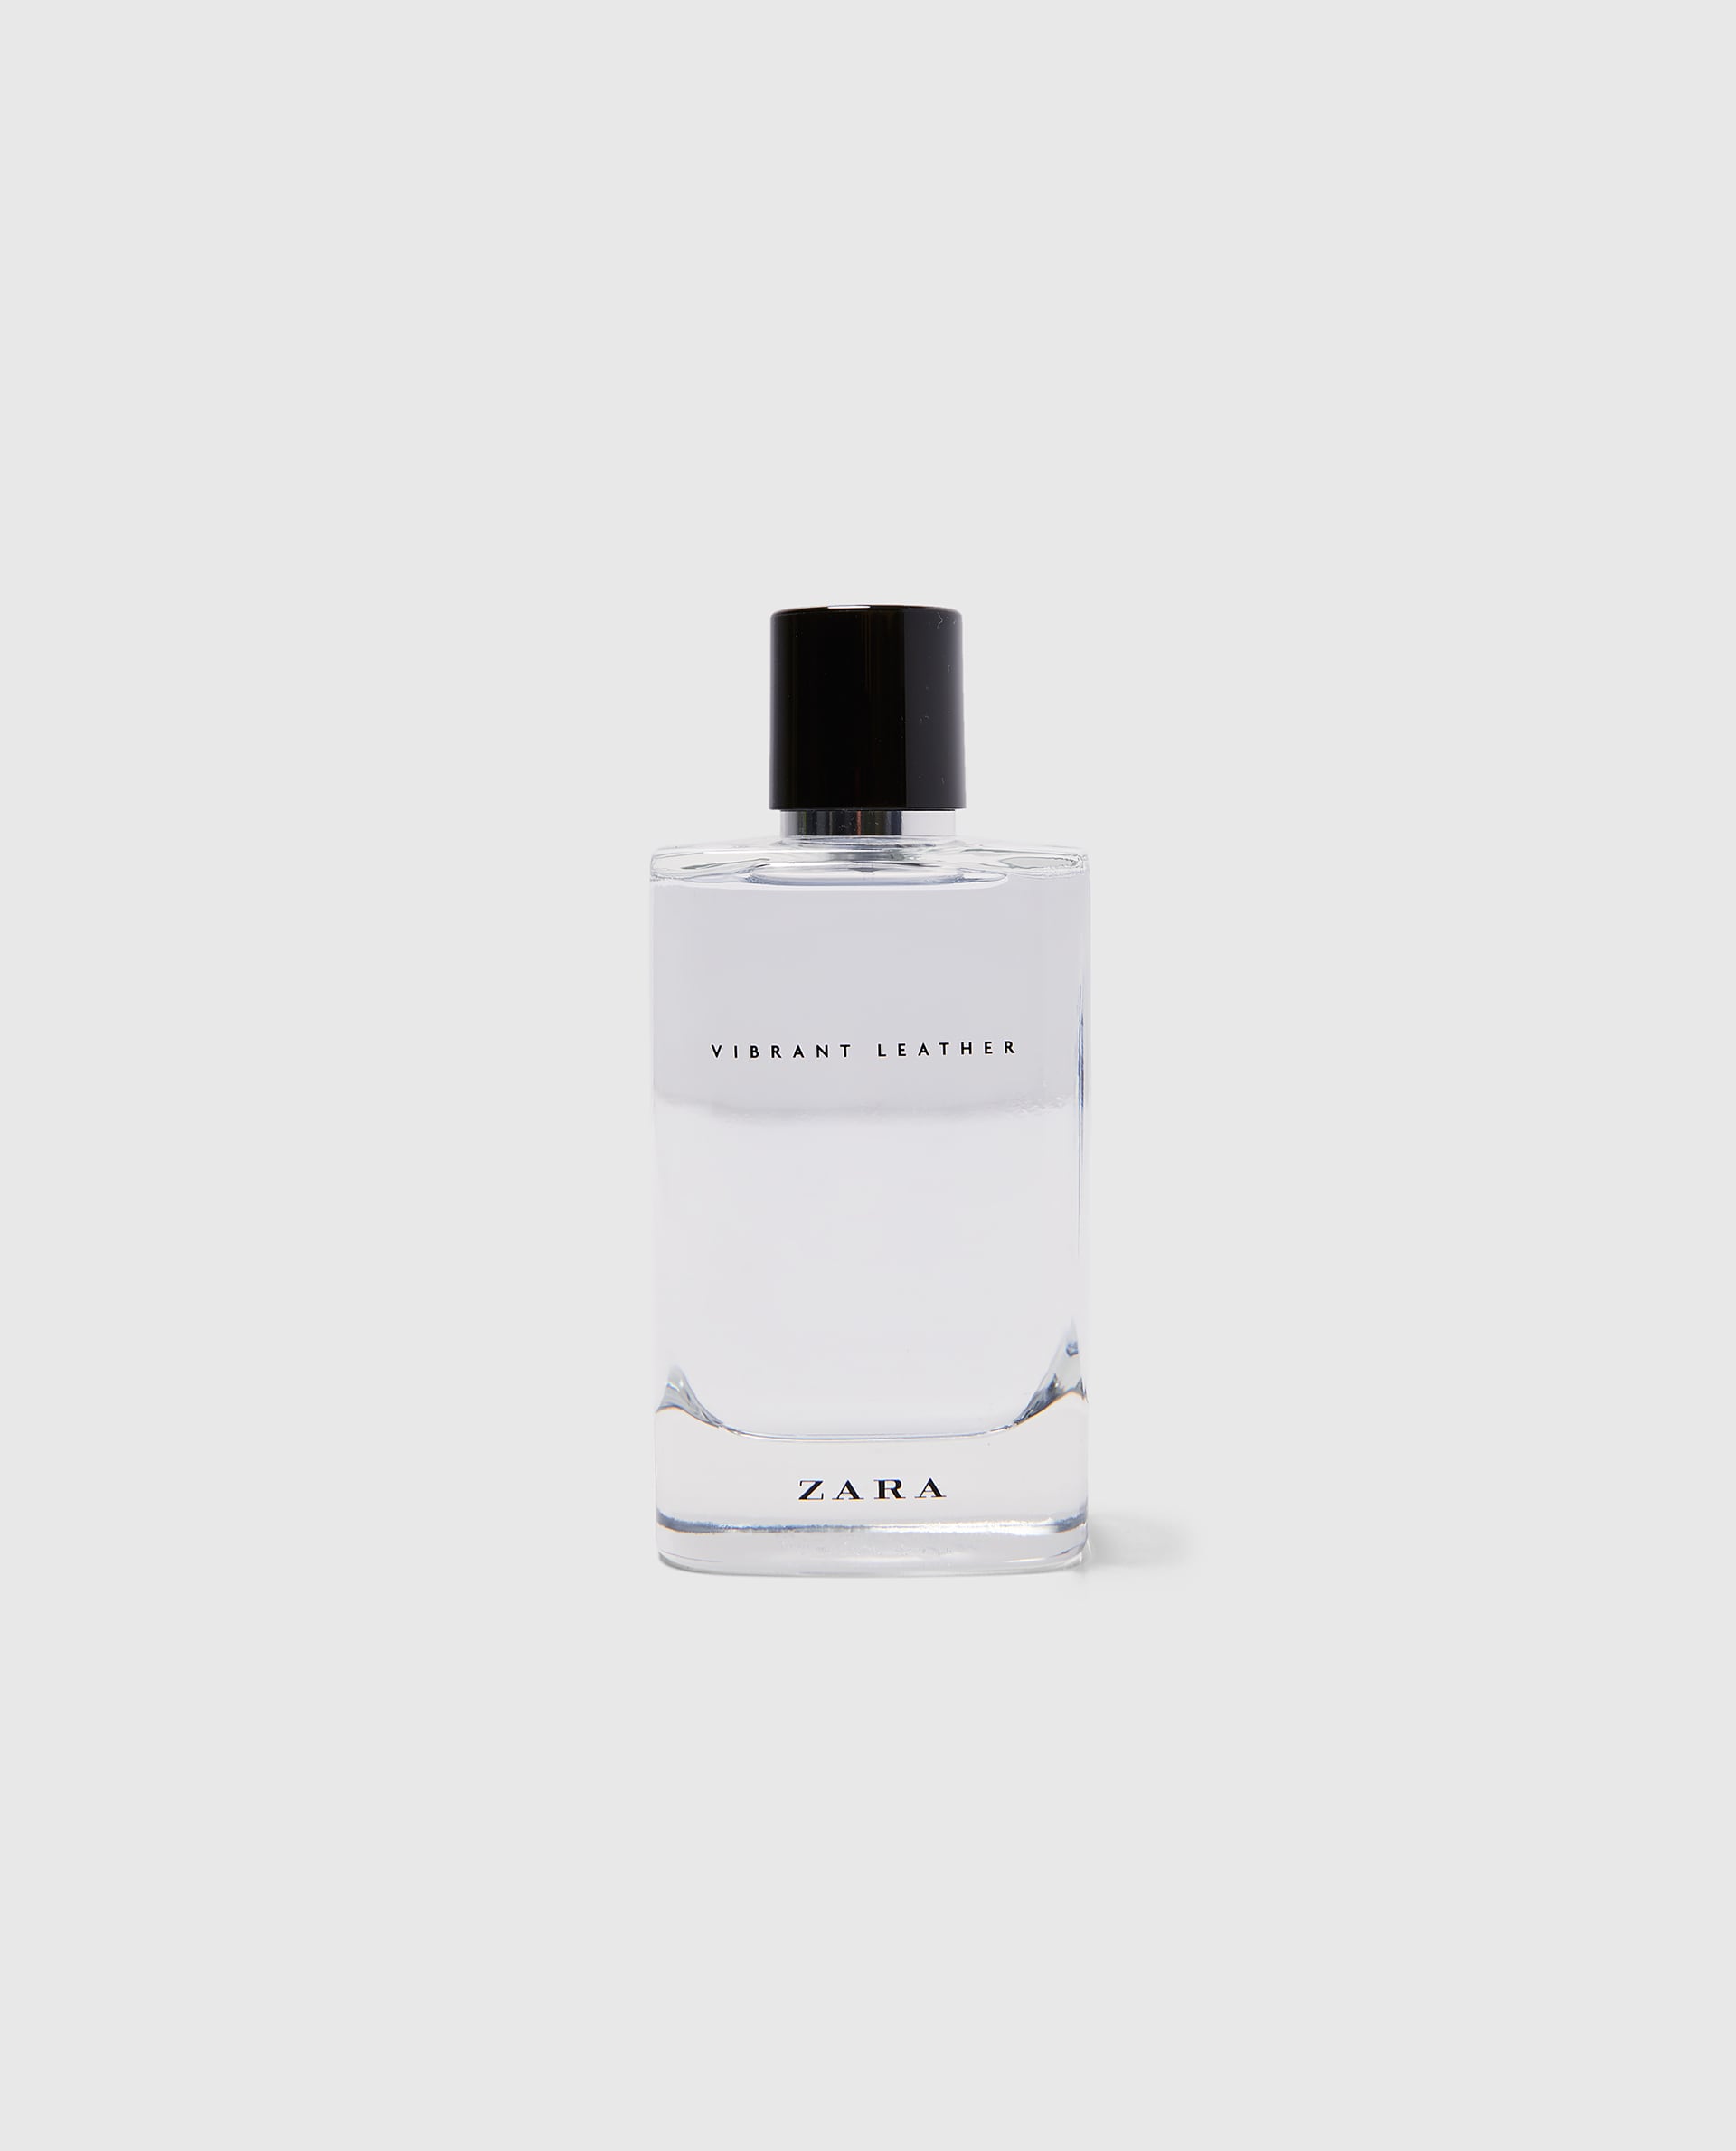 Vibrant Leather Eau de Parfum Zara cologne - a new fragrance for men 2018